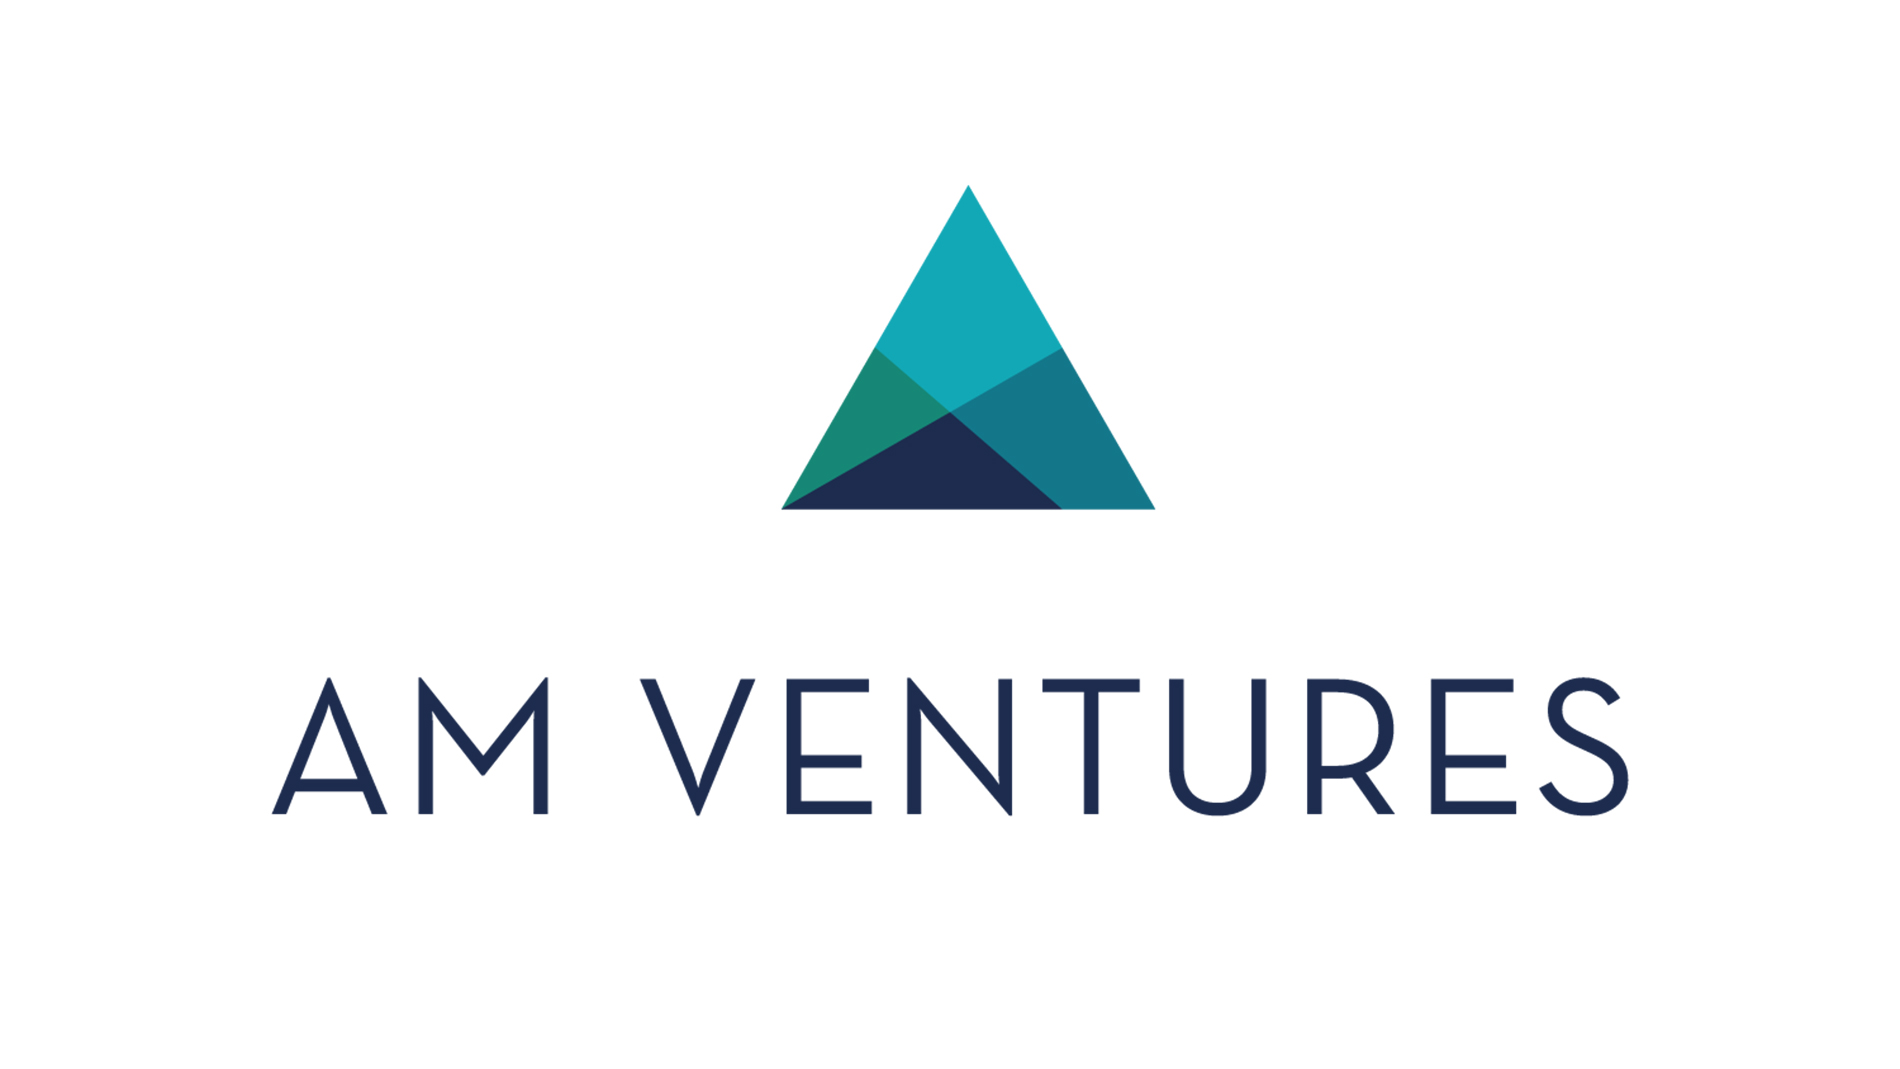 AM Ventures Impact Award